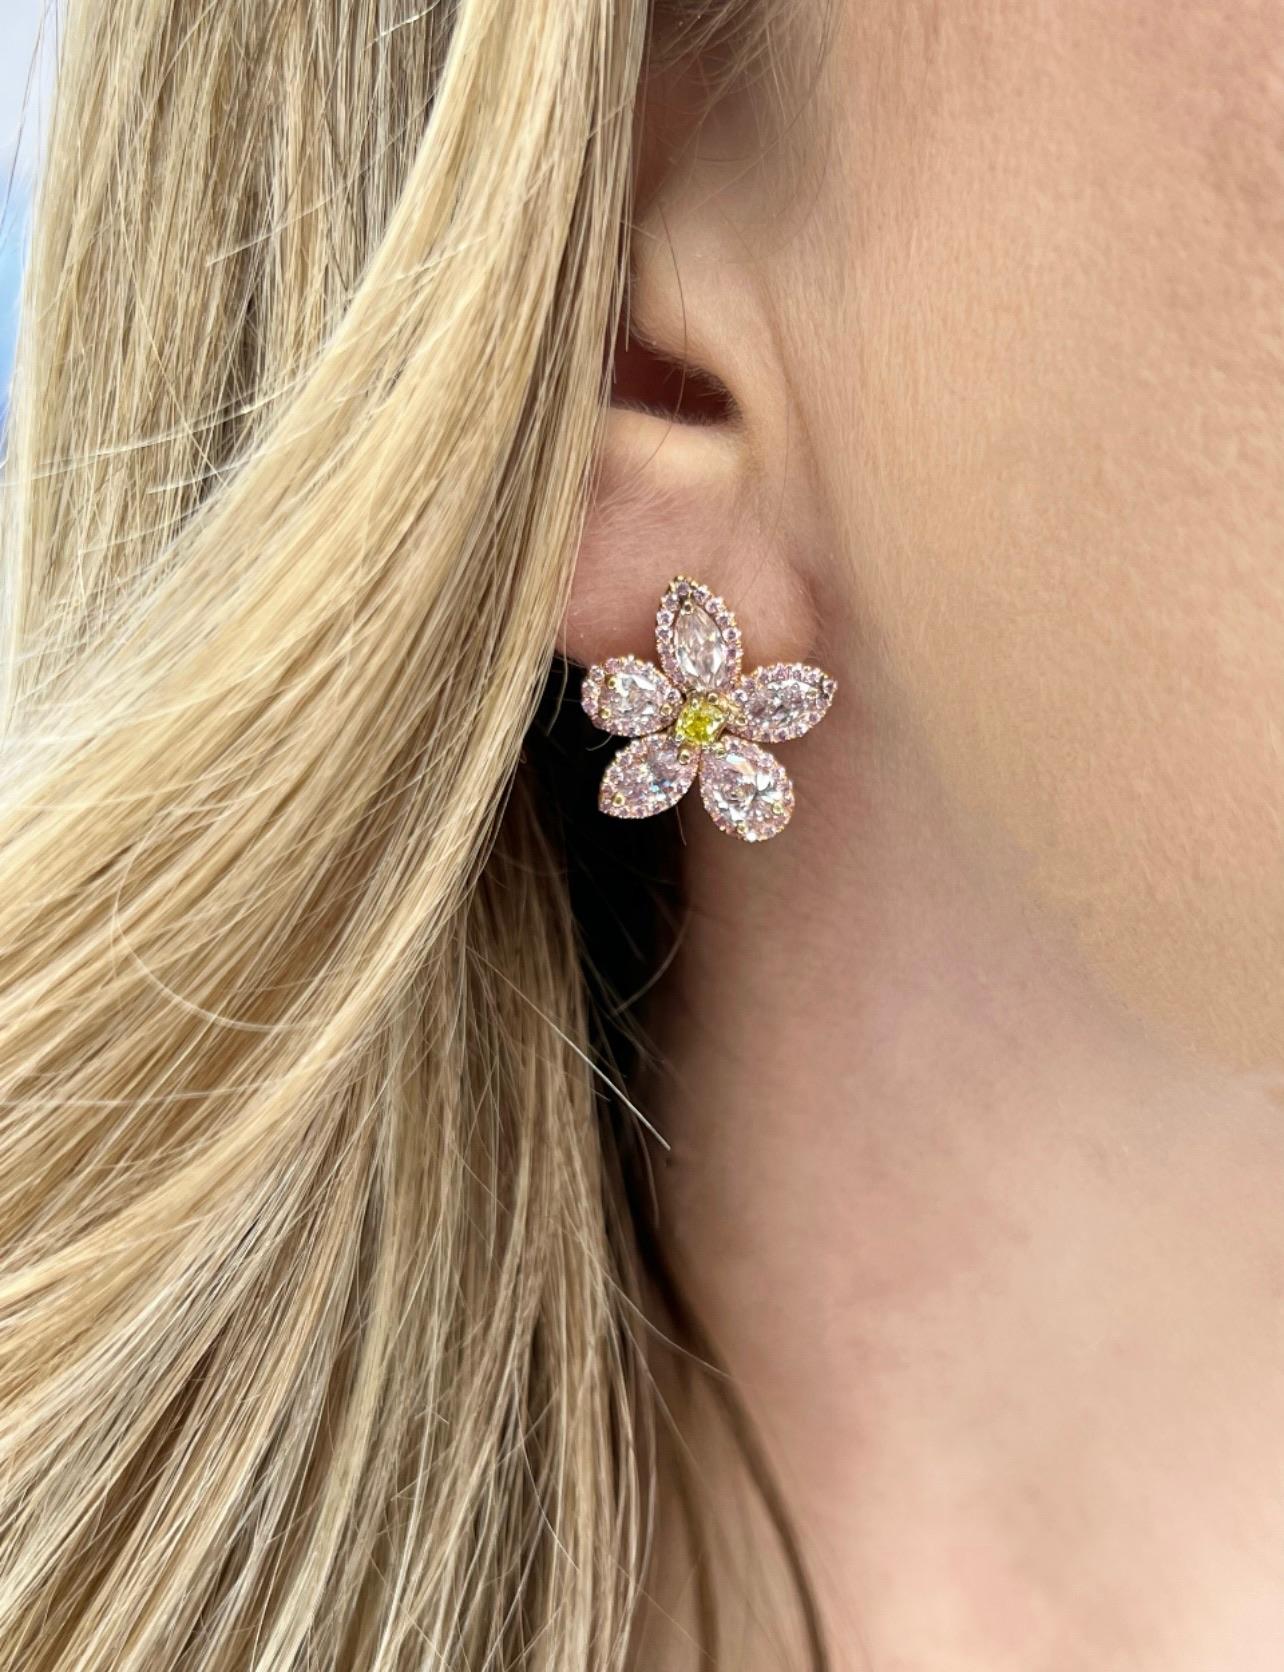 David Rosenberg 2.35 Carat Pink & Green GIA Flower Diamond Stud Earring For Sale 4